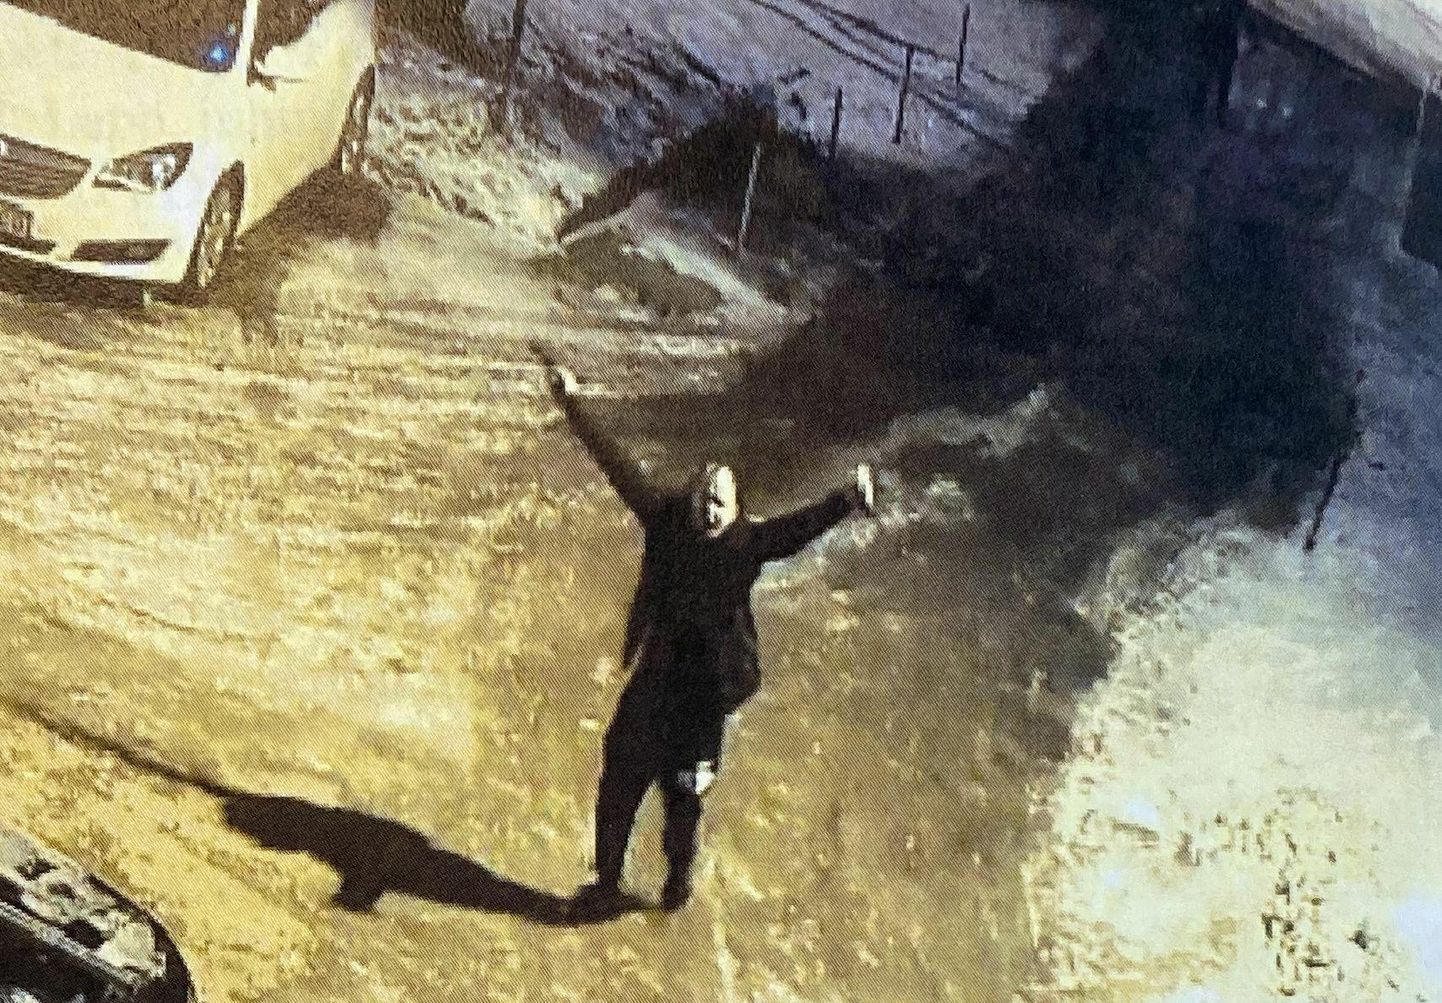 Снимок с камеры наблюдения: Роман Лебедев рано утром 24 февраля появился во дворе дома на улице Кари в Пыхья-Таллинне, выкрикивал нецензурную брань на русском языке и размахивал ножом с длинным лезвием и пистолетом.